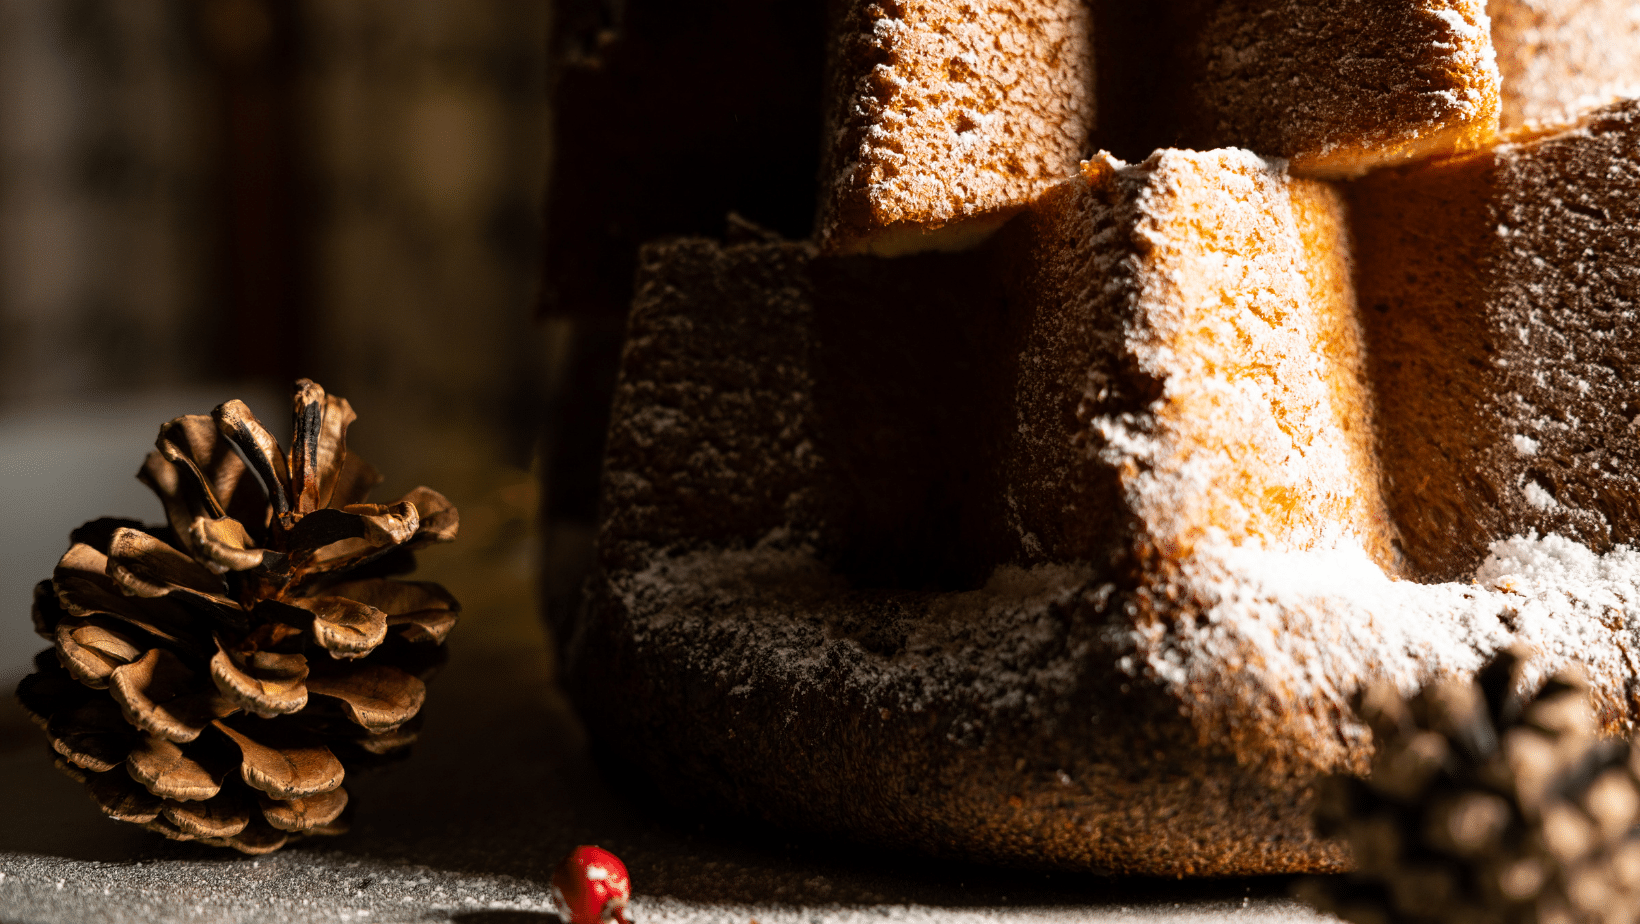 Tira fuori lo spirito natalizio con la ricetta del Pandoro proteico